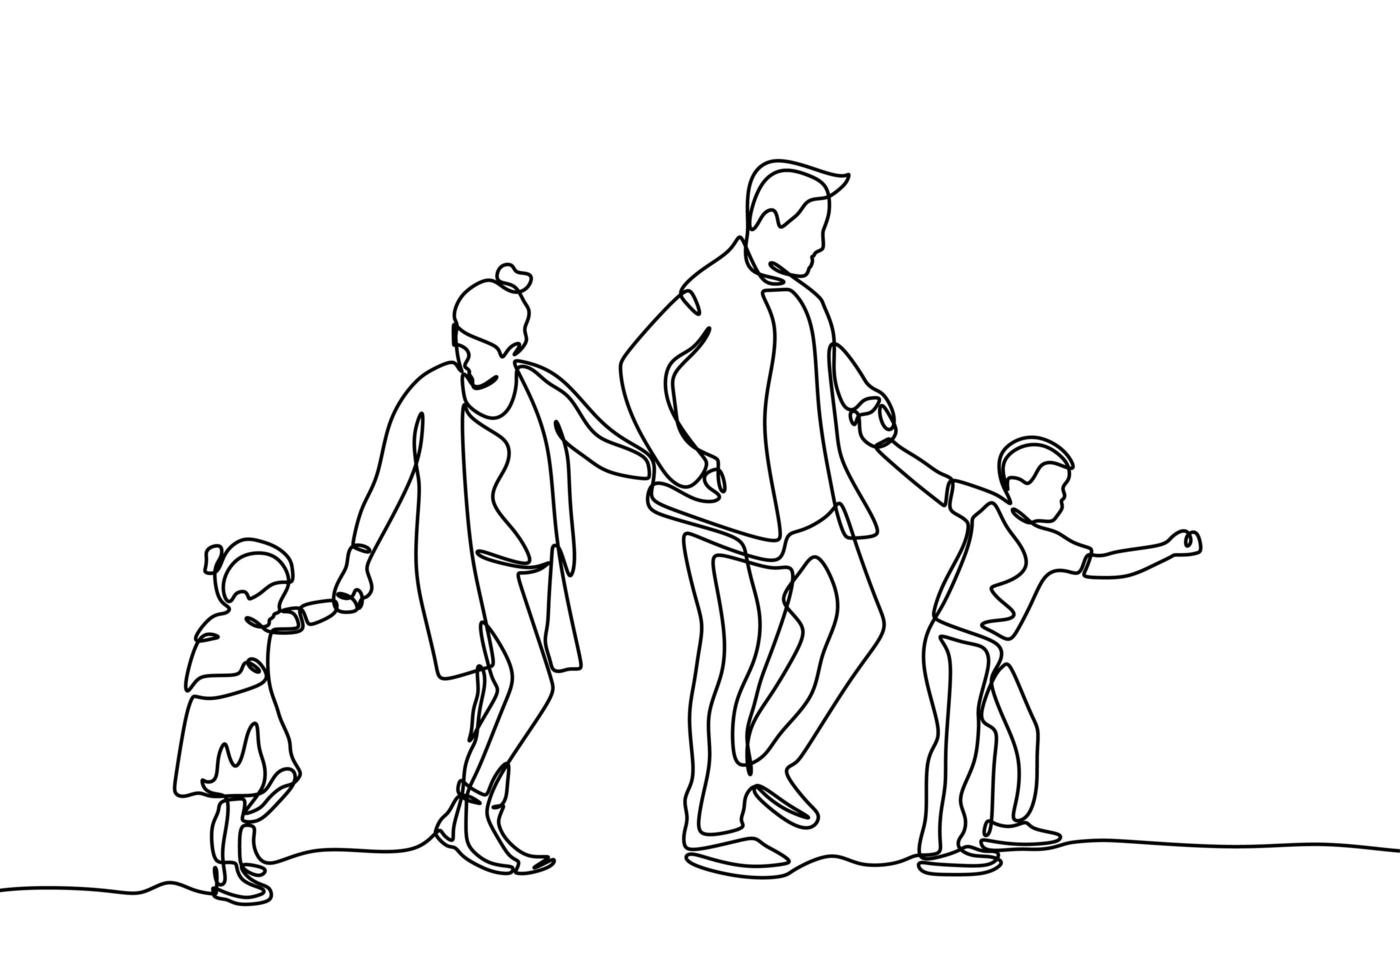 doorlopende lijntekening van familieleden. vader, moeder, dochter en zoon hand in hand samen. vector